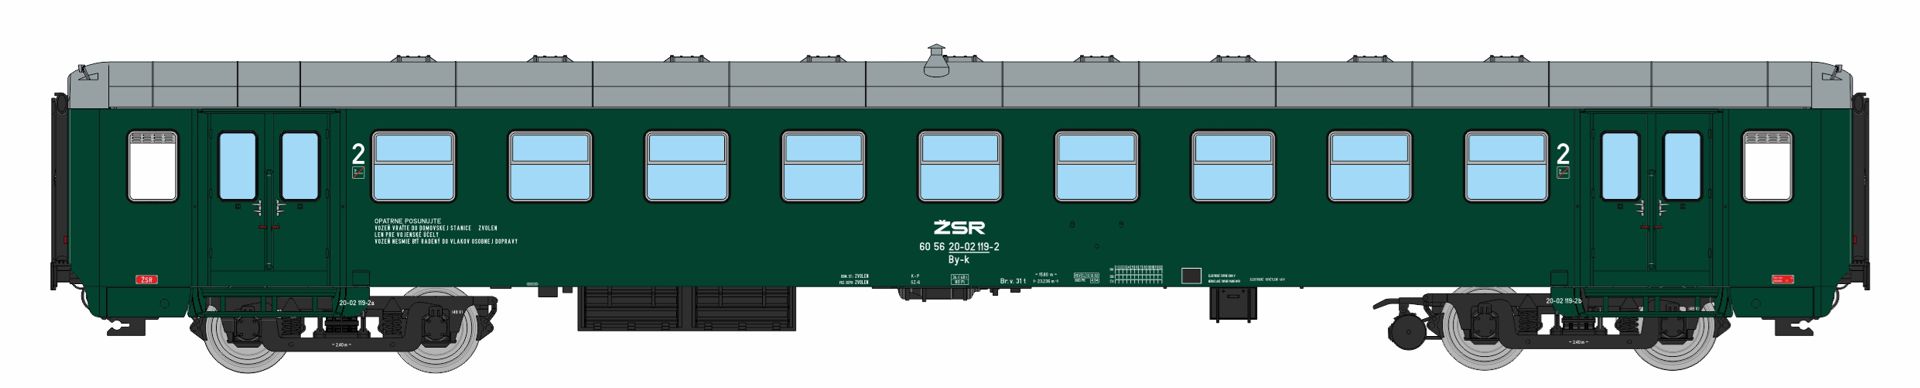 igra 97110030 - Personenwagen Byz-k, ZSR, Ep.IV